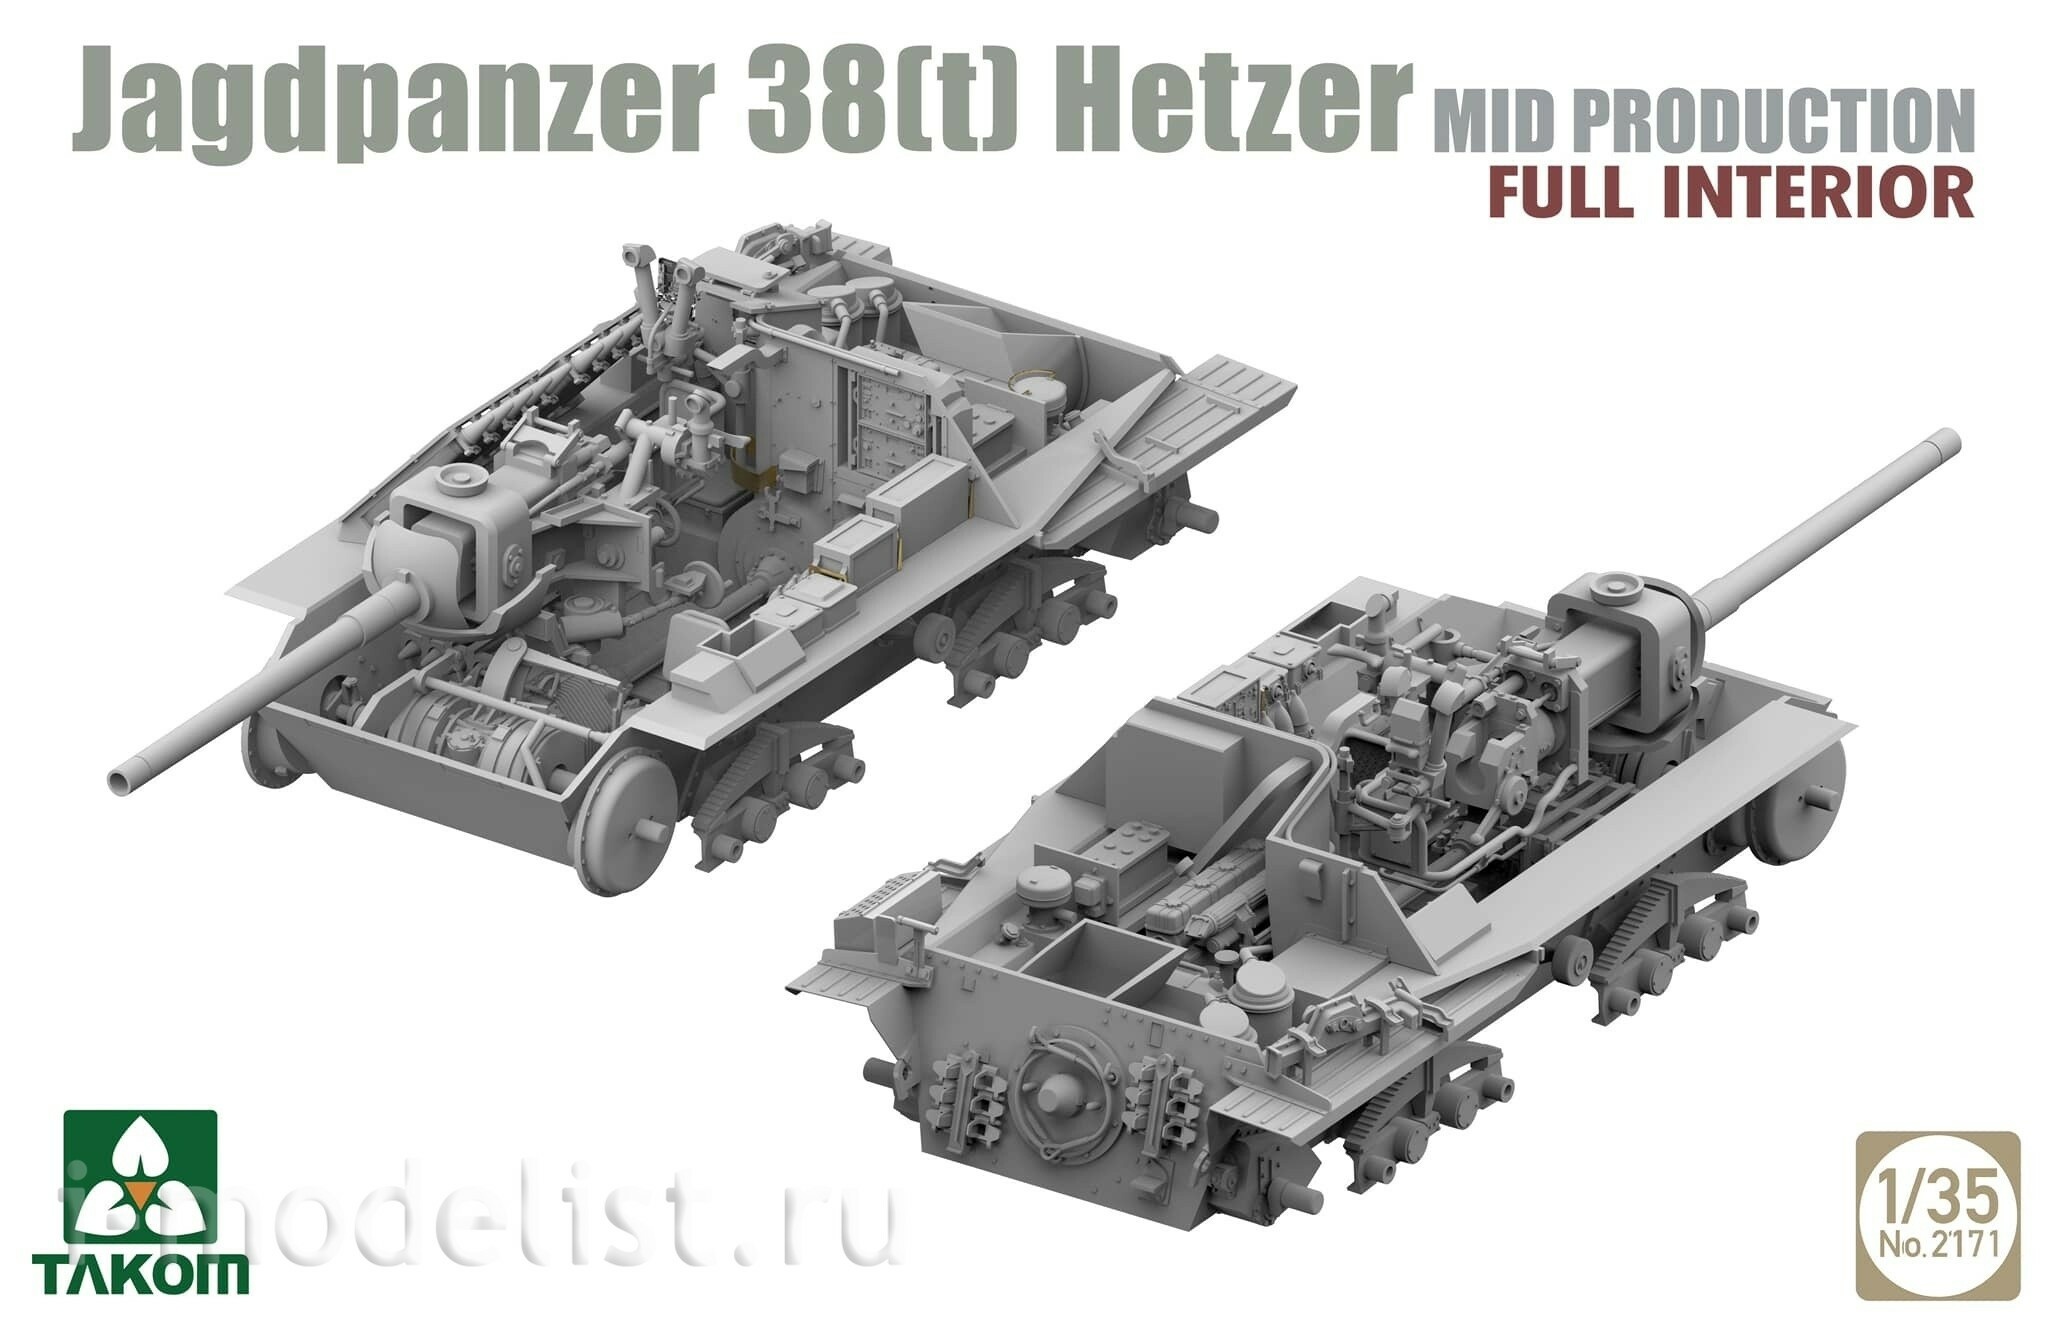 2171 Takom 1/35 Немецкая САУ Jagdpanzer 38(t) Hetzer (промежуточная) с полным интерьером